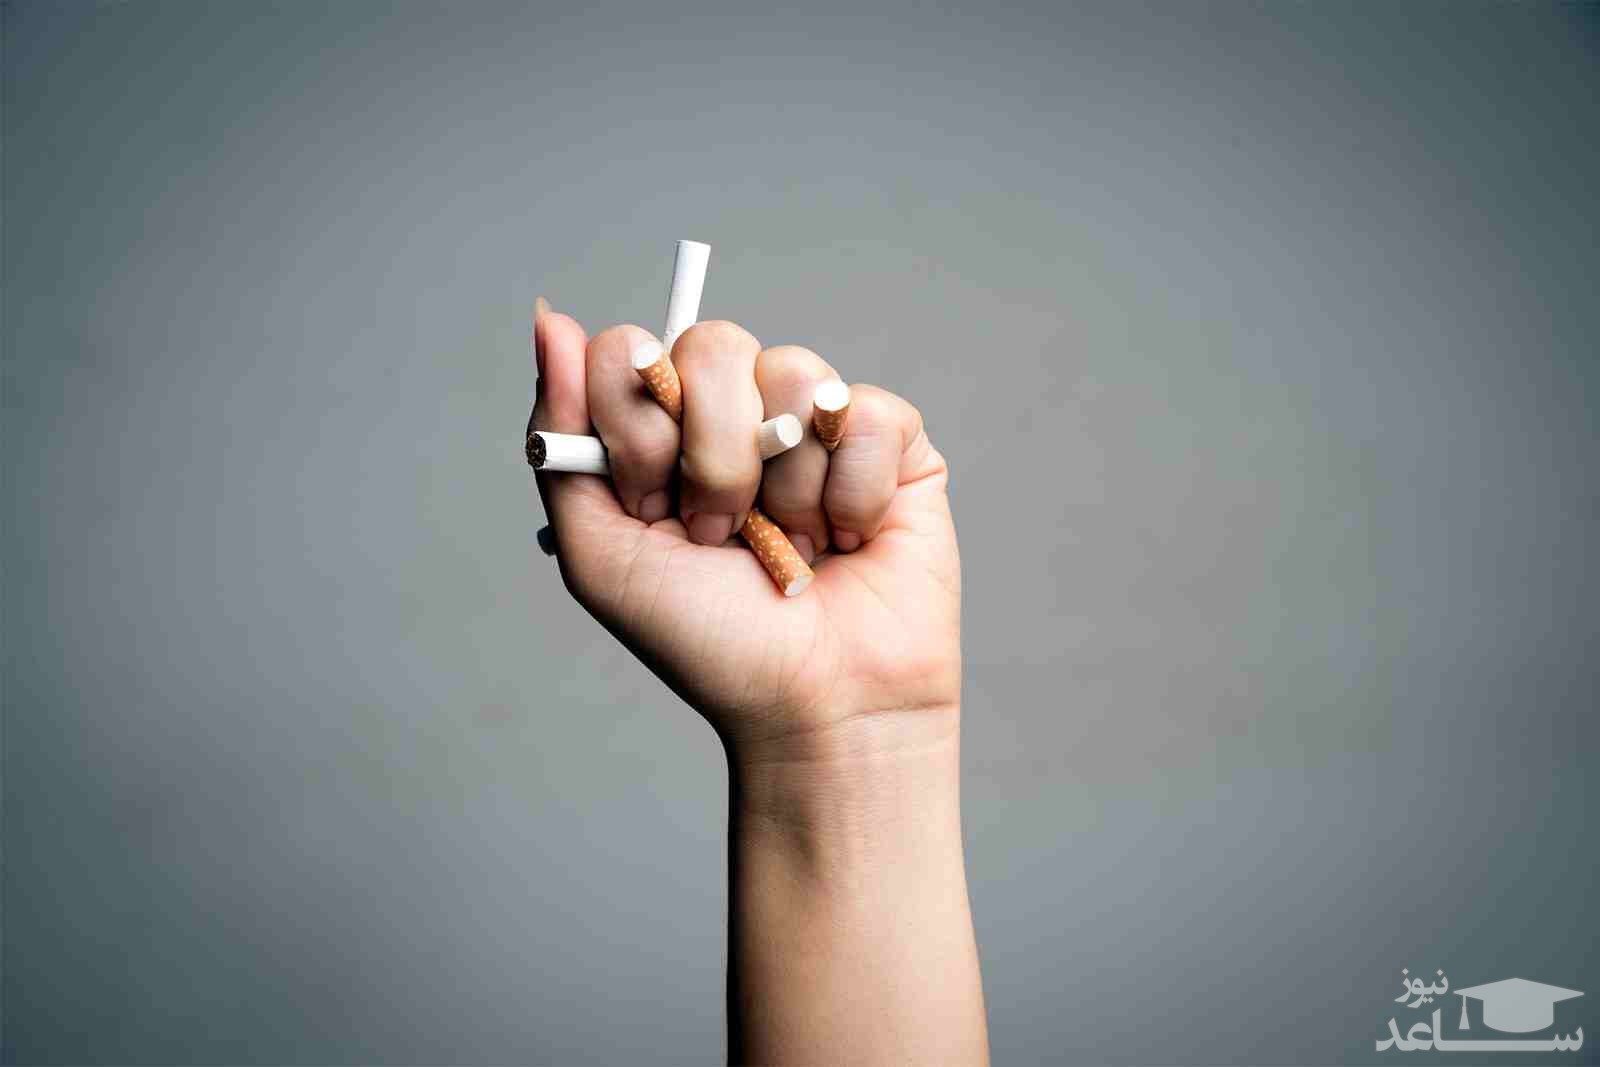 له کردن سیگار در دست